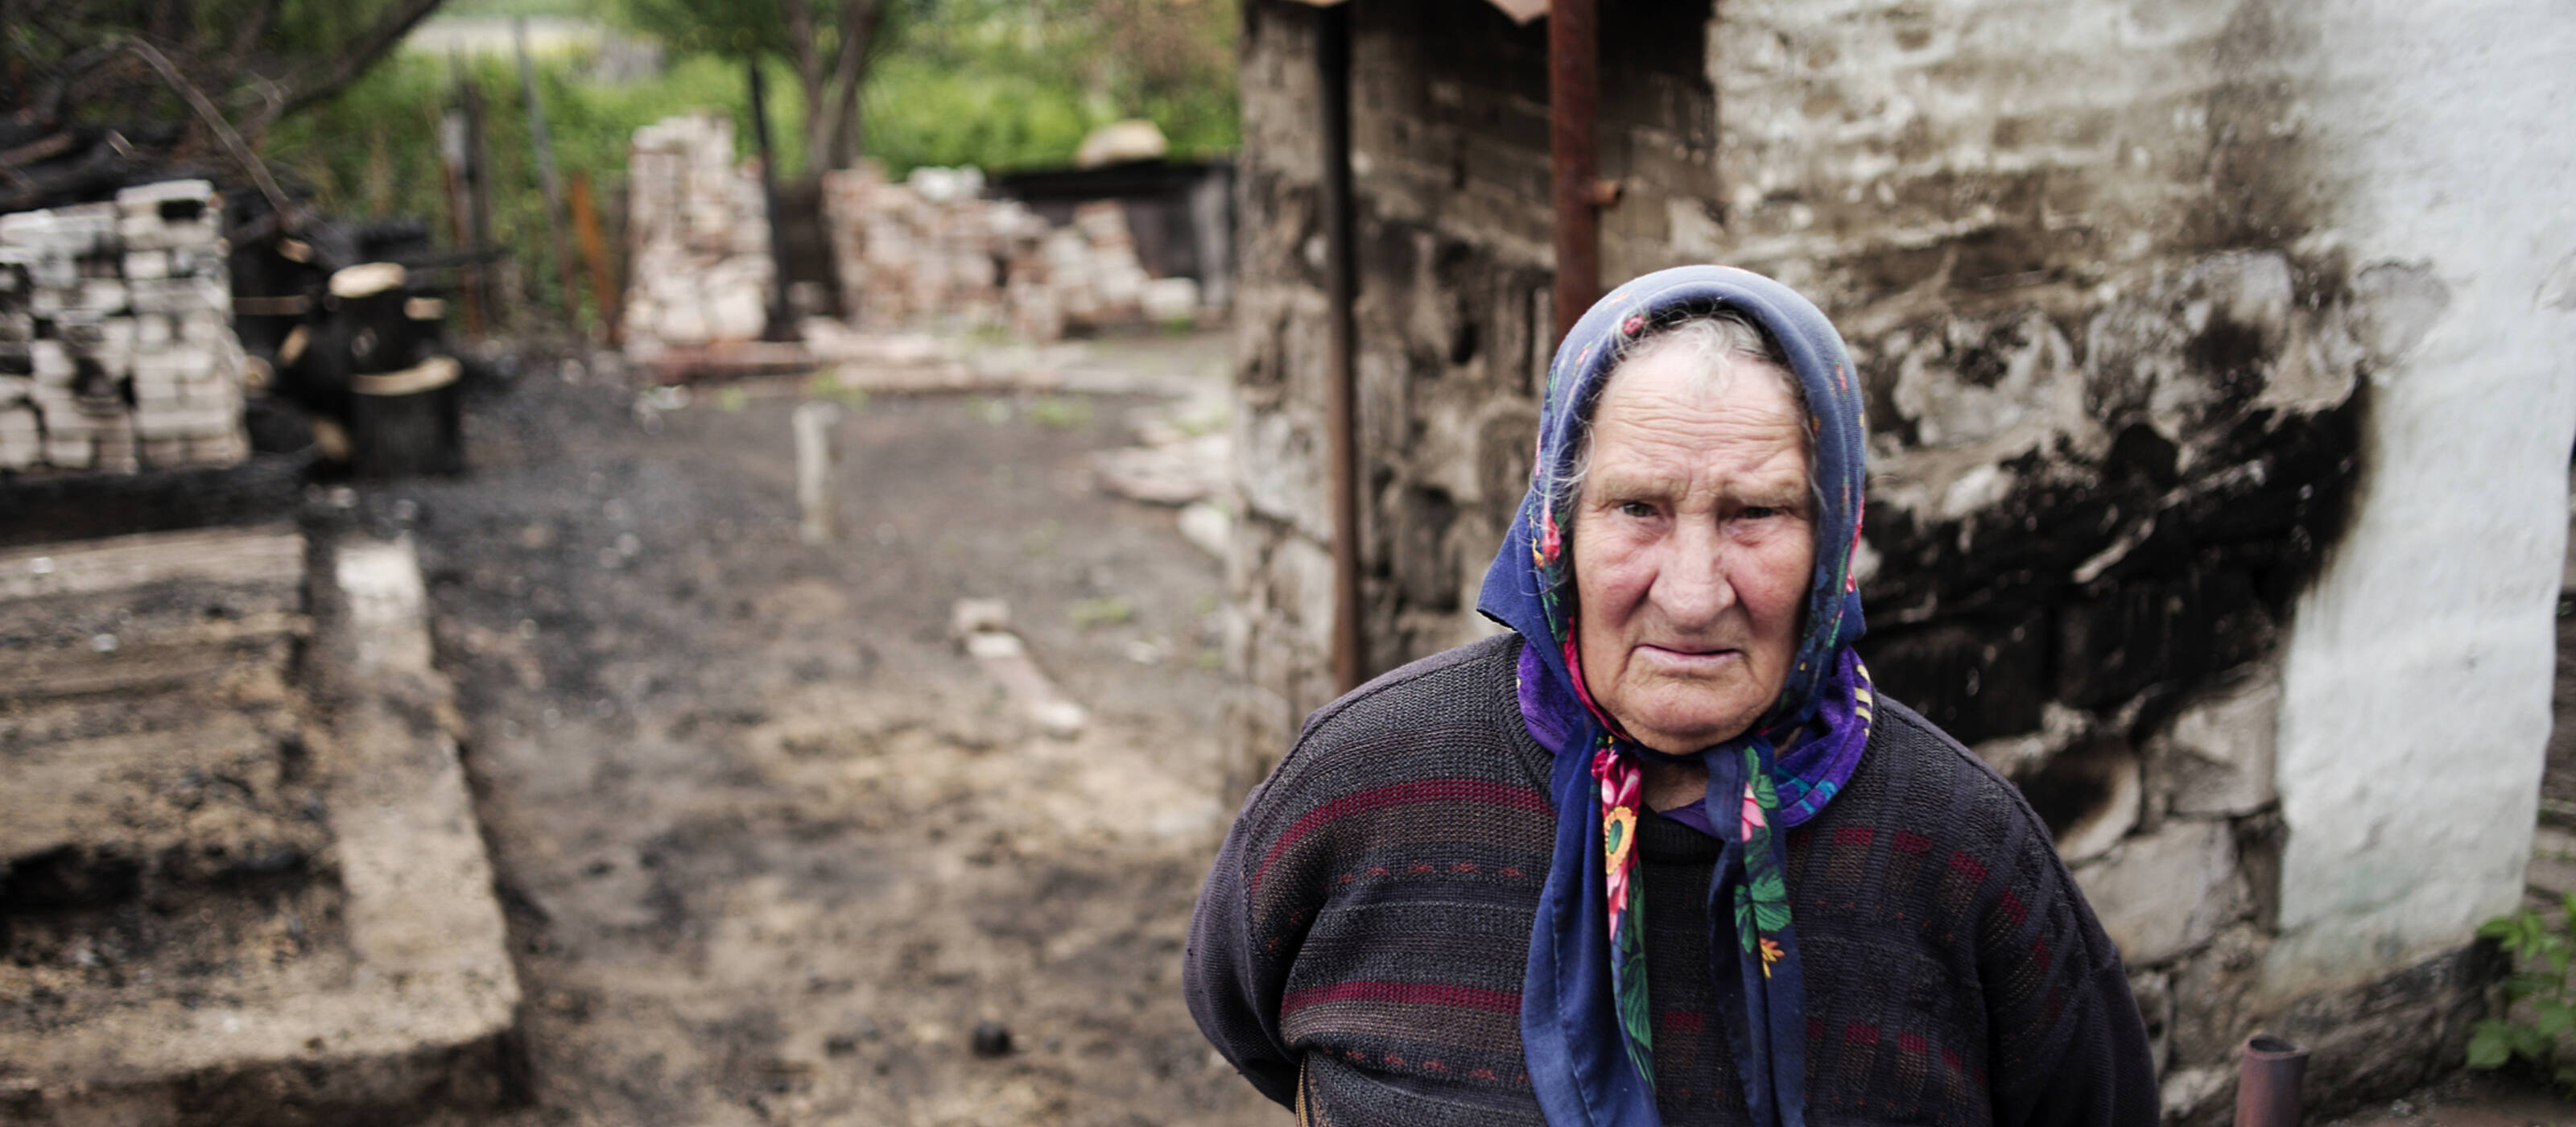 La catastrophe humanitaire qui frappe l’Ukraine s'aggrave chaque jour.